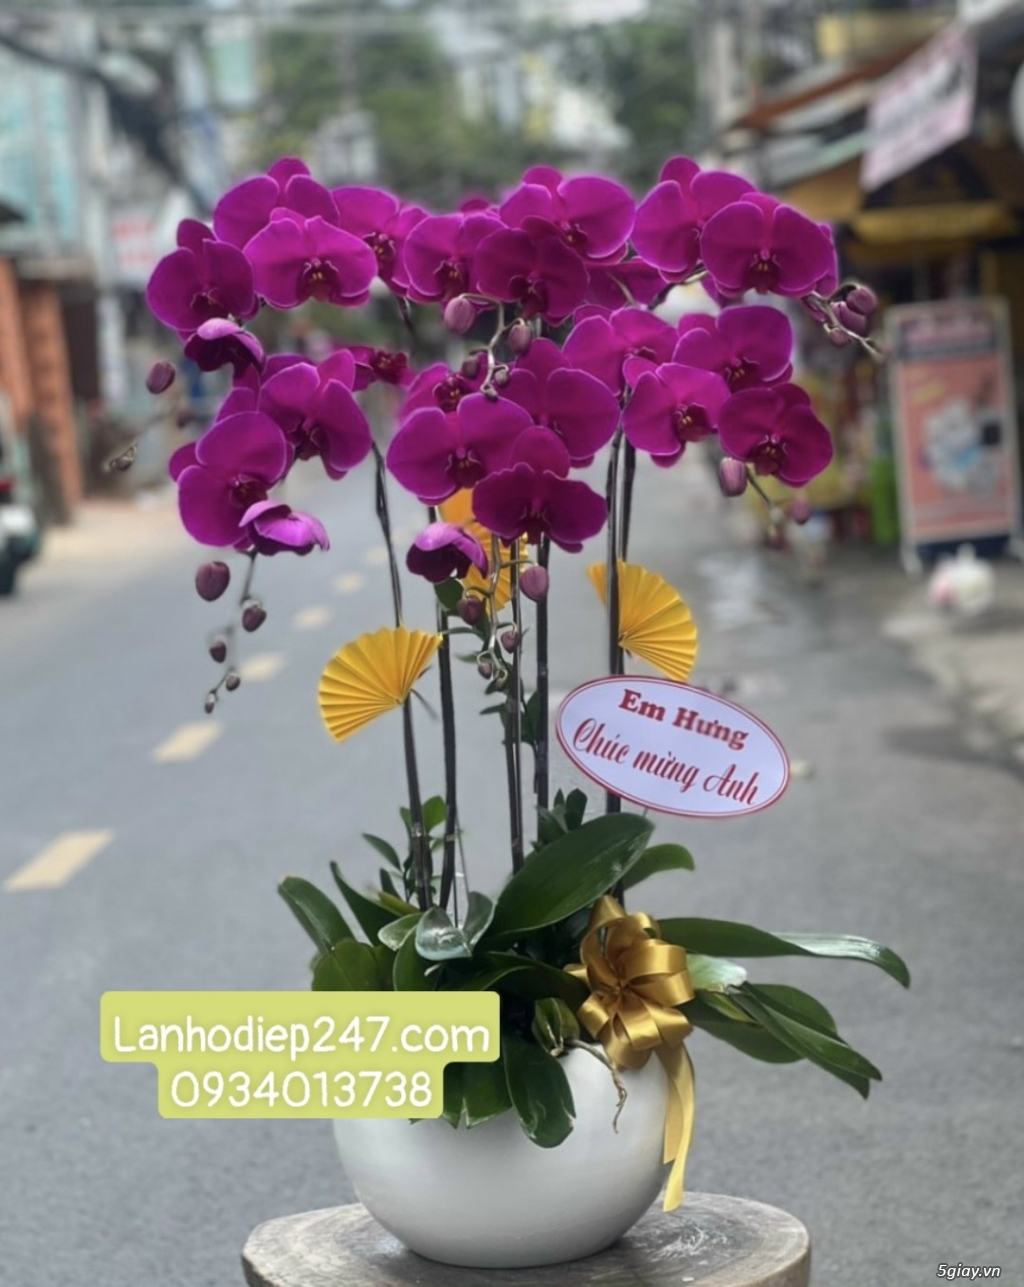 Shop Hoa Lan đẹp cam kết chất lượng lớn nhất Sài Gòn tha hồ chọn lựa - 11